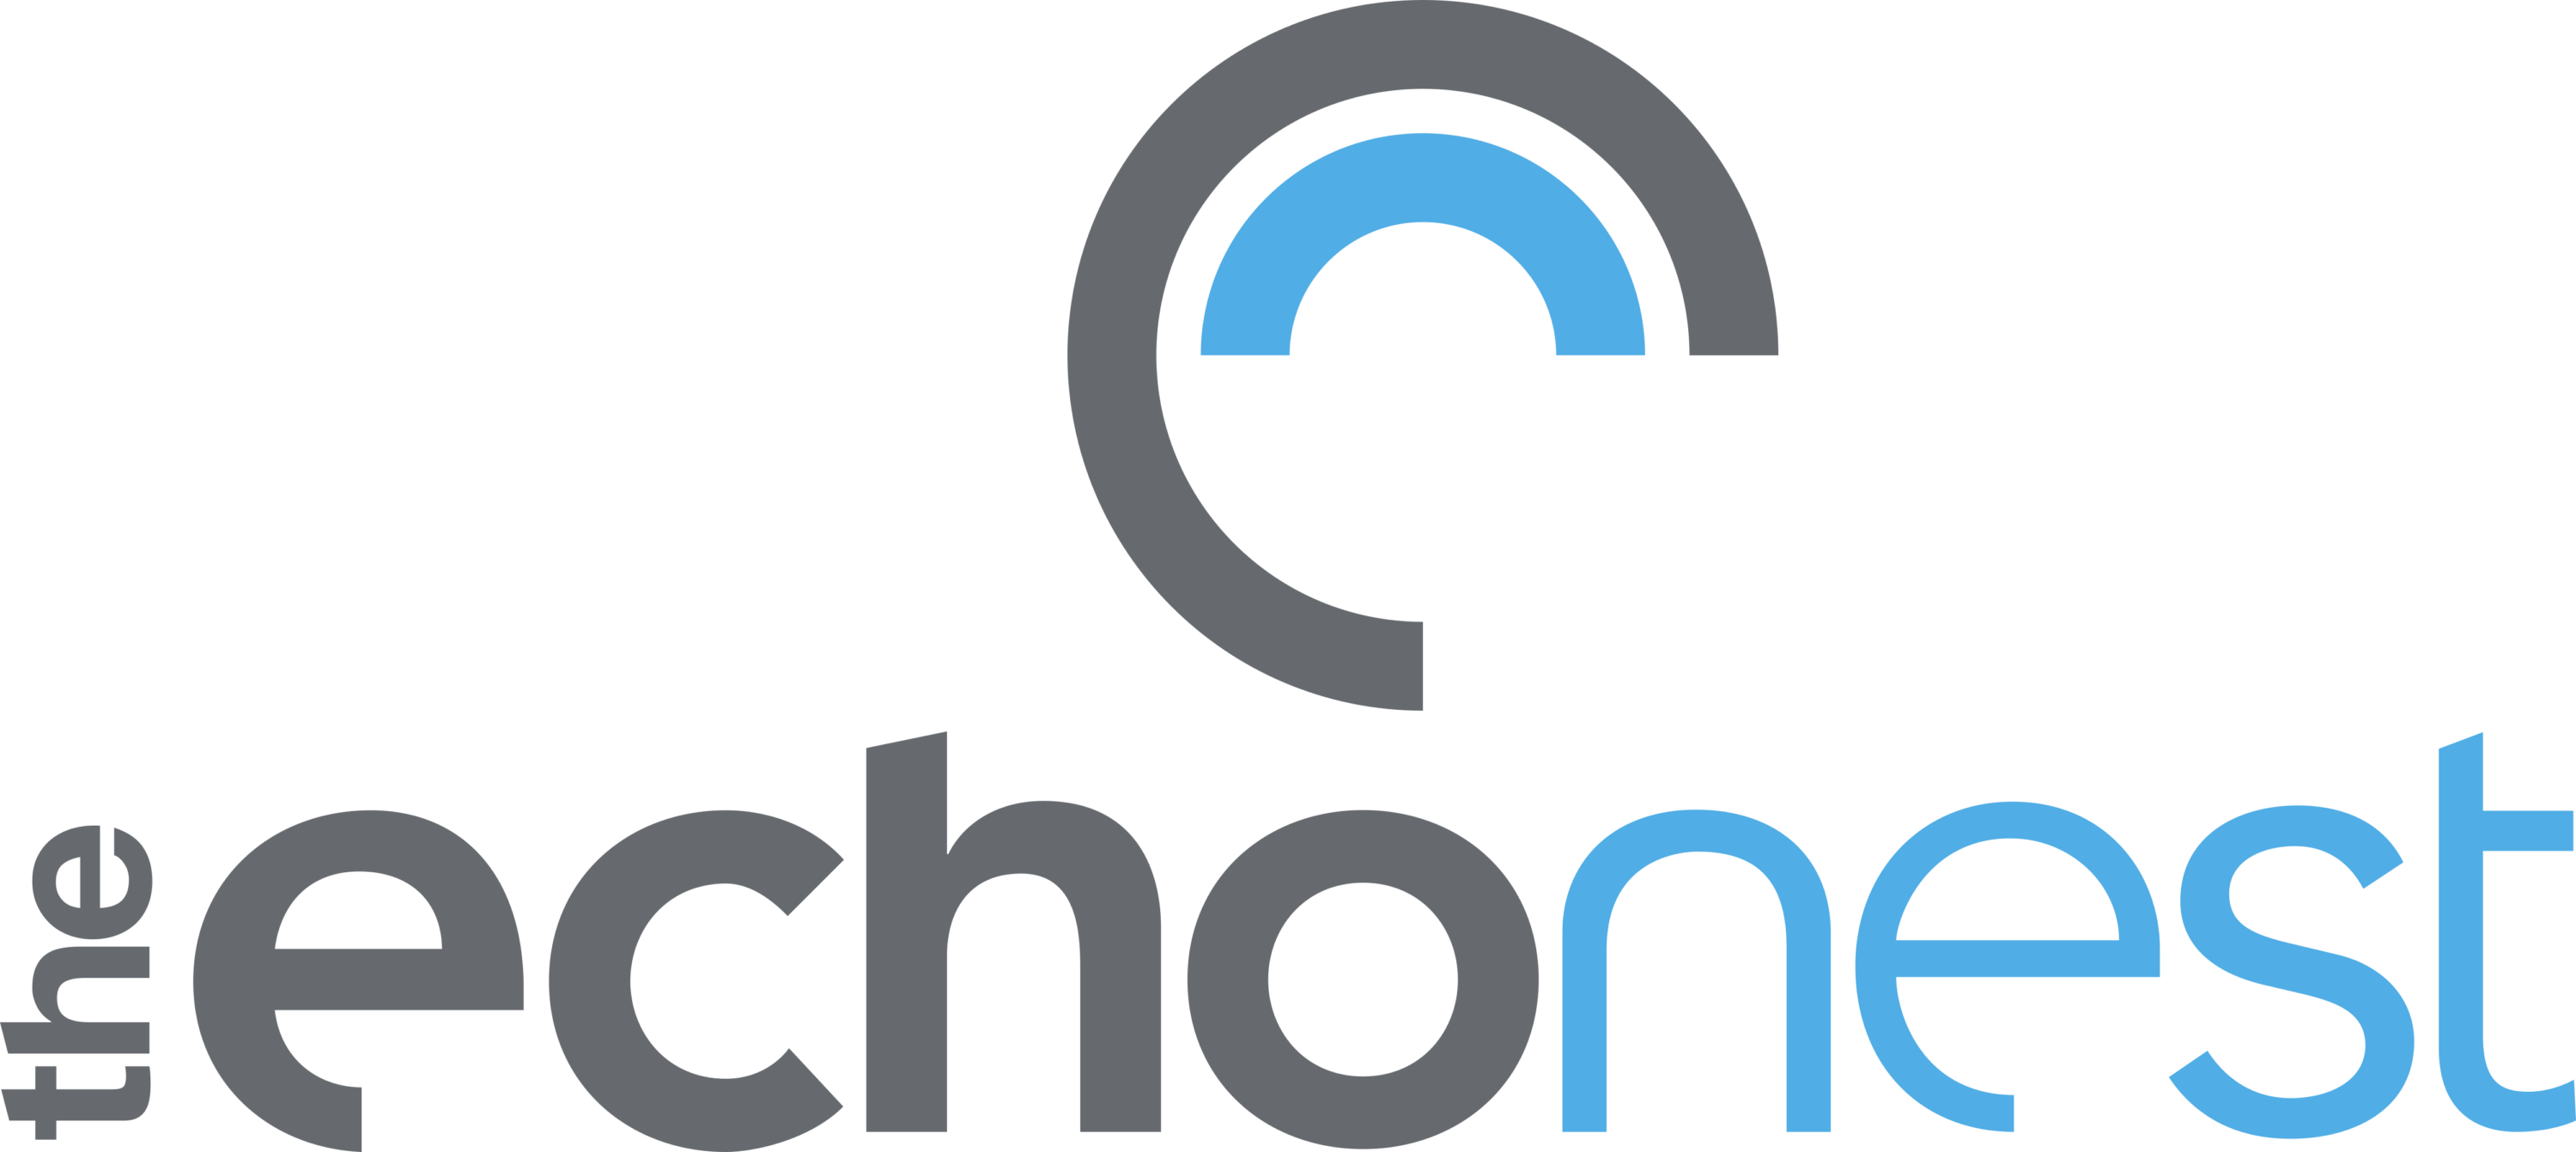 The Echo Nest Logo